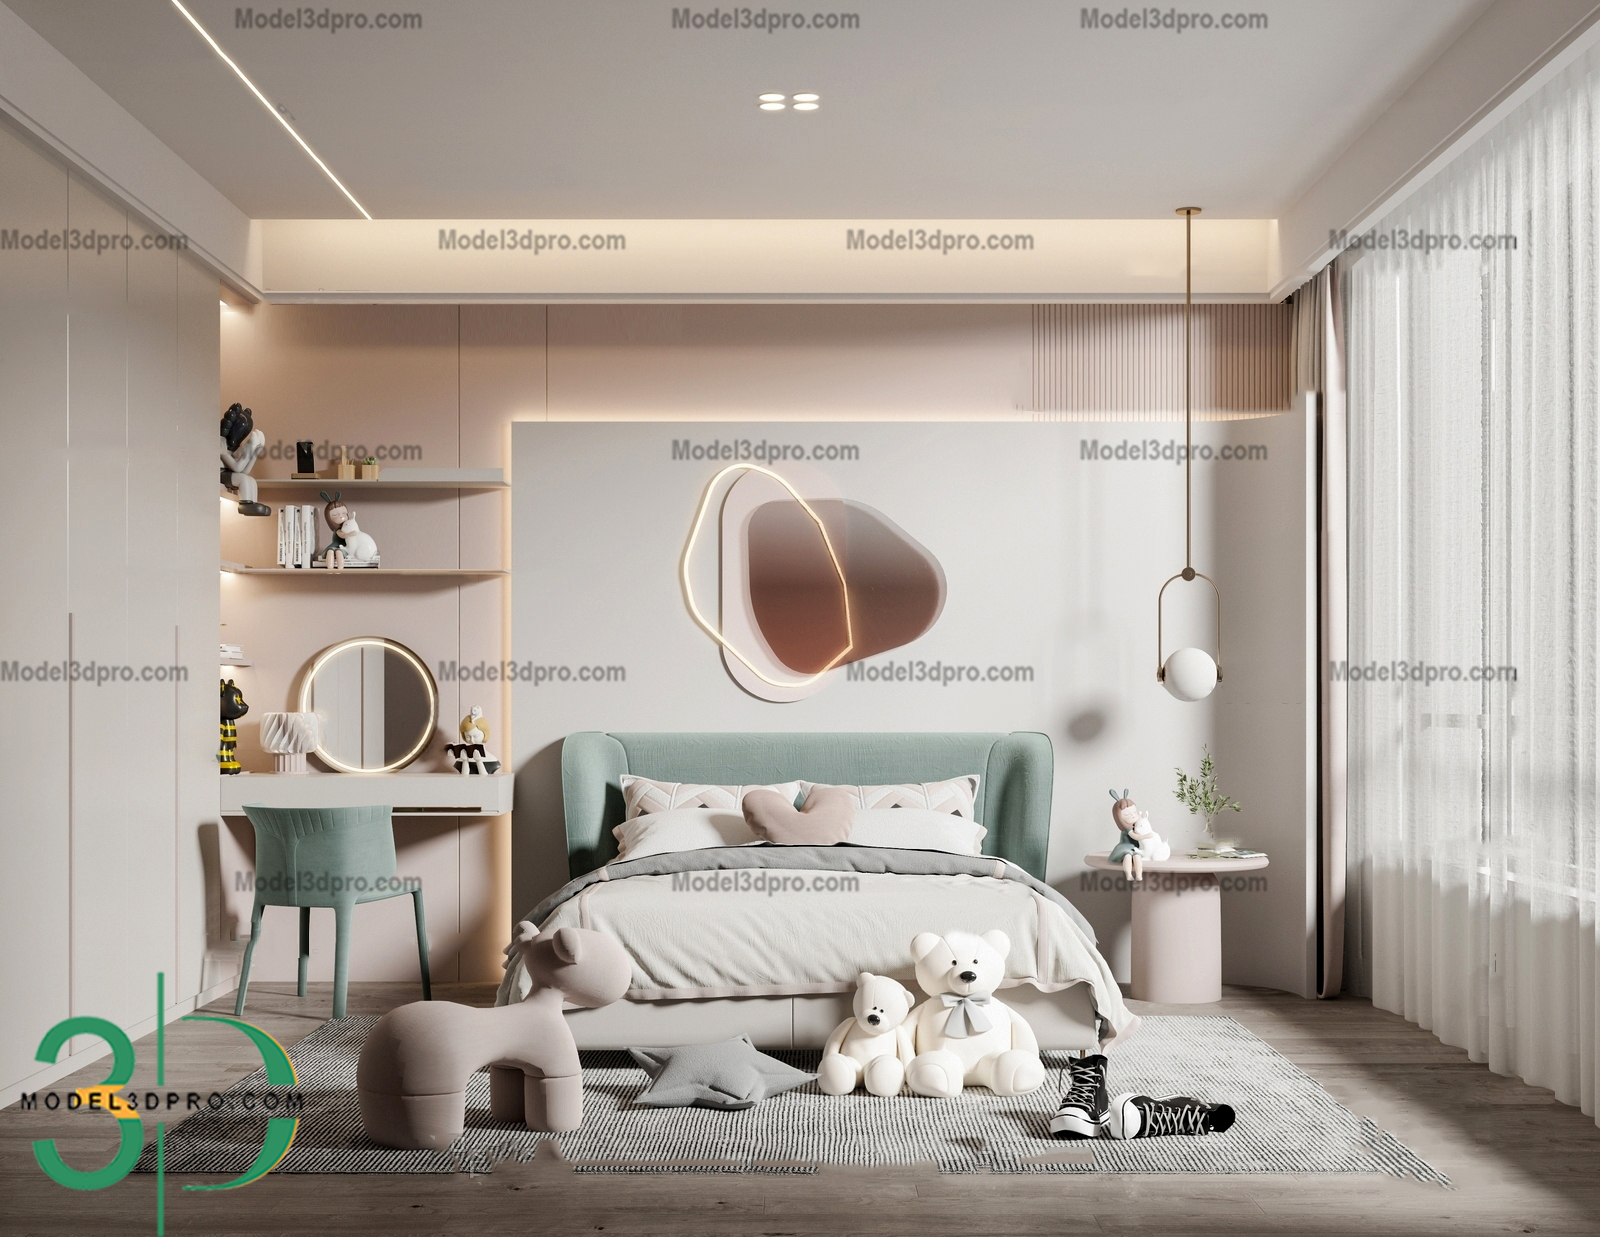 3D Bedroom Models